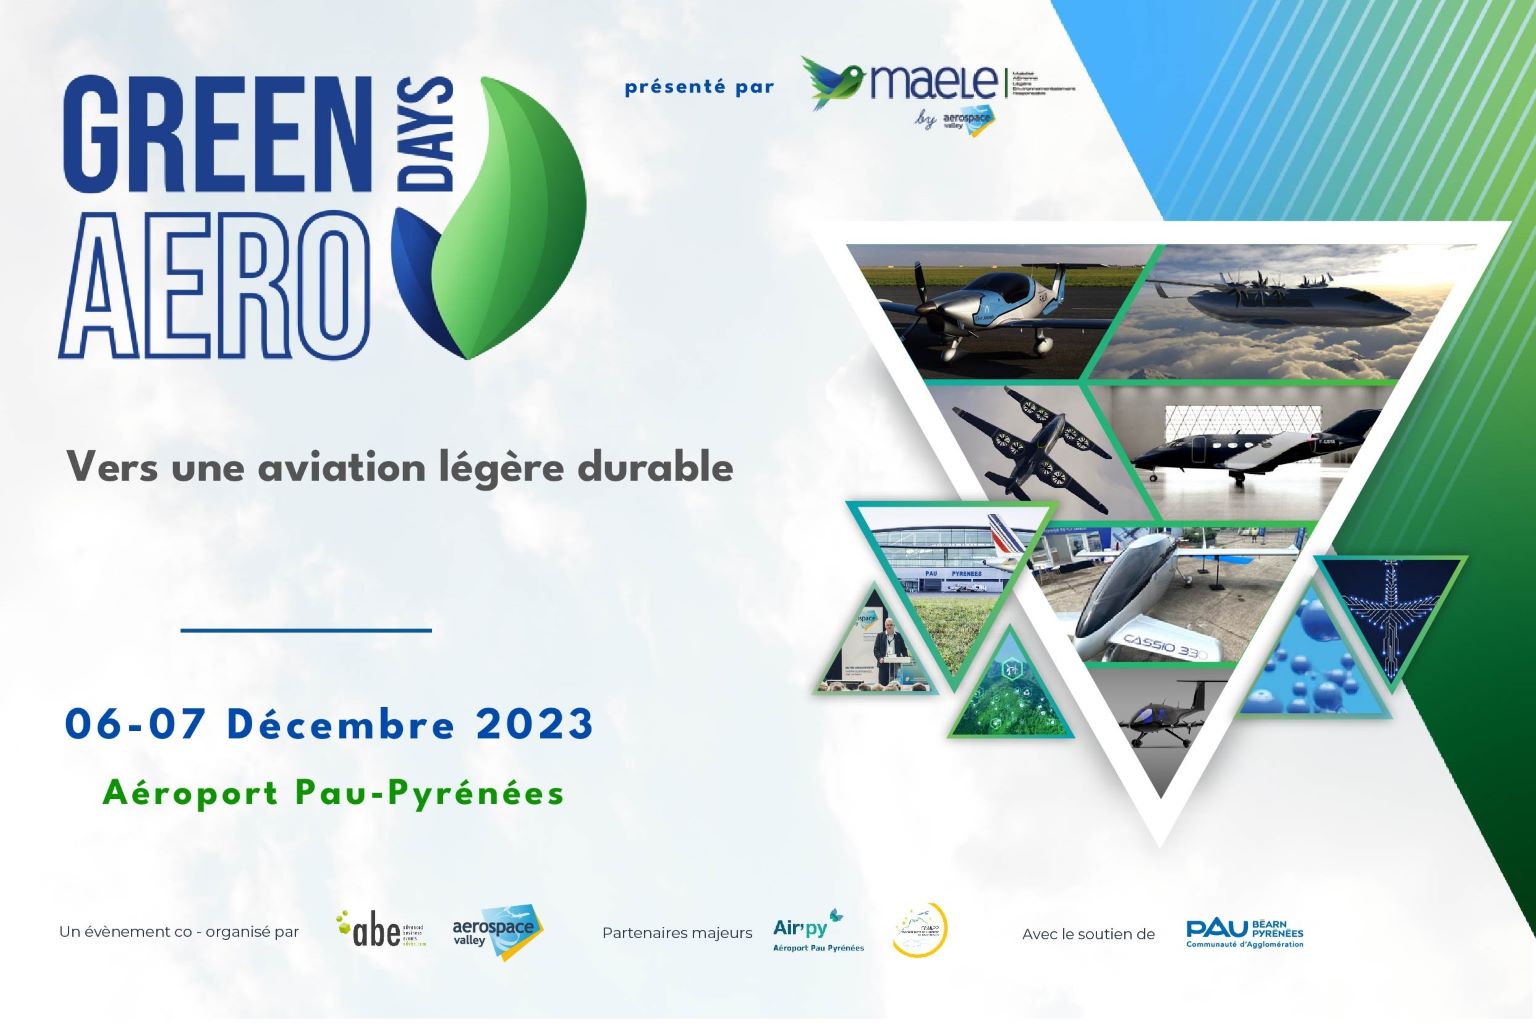 Green Aero DaysVers une aviation légère durable
06-07 Décembre 2023
Aéroport Pau Pyrénées